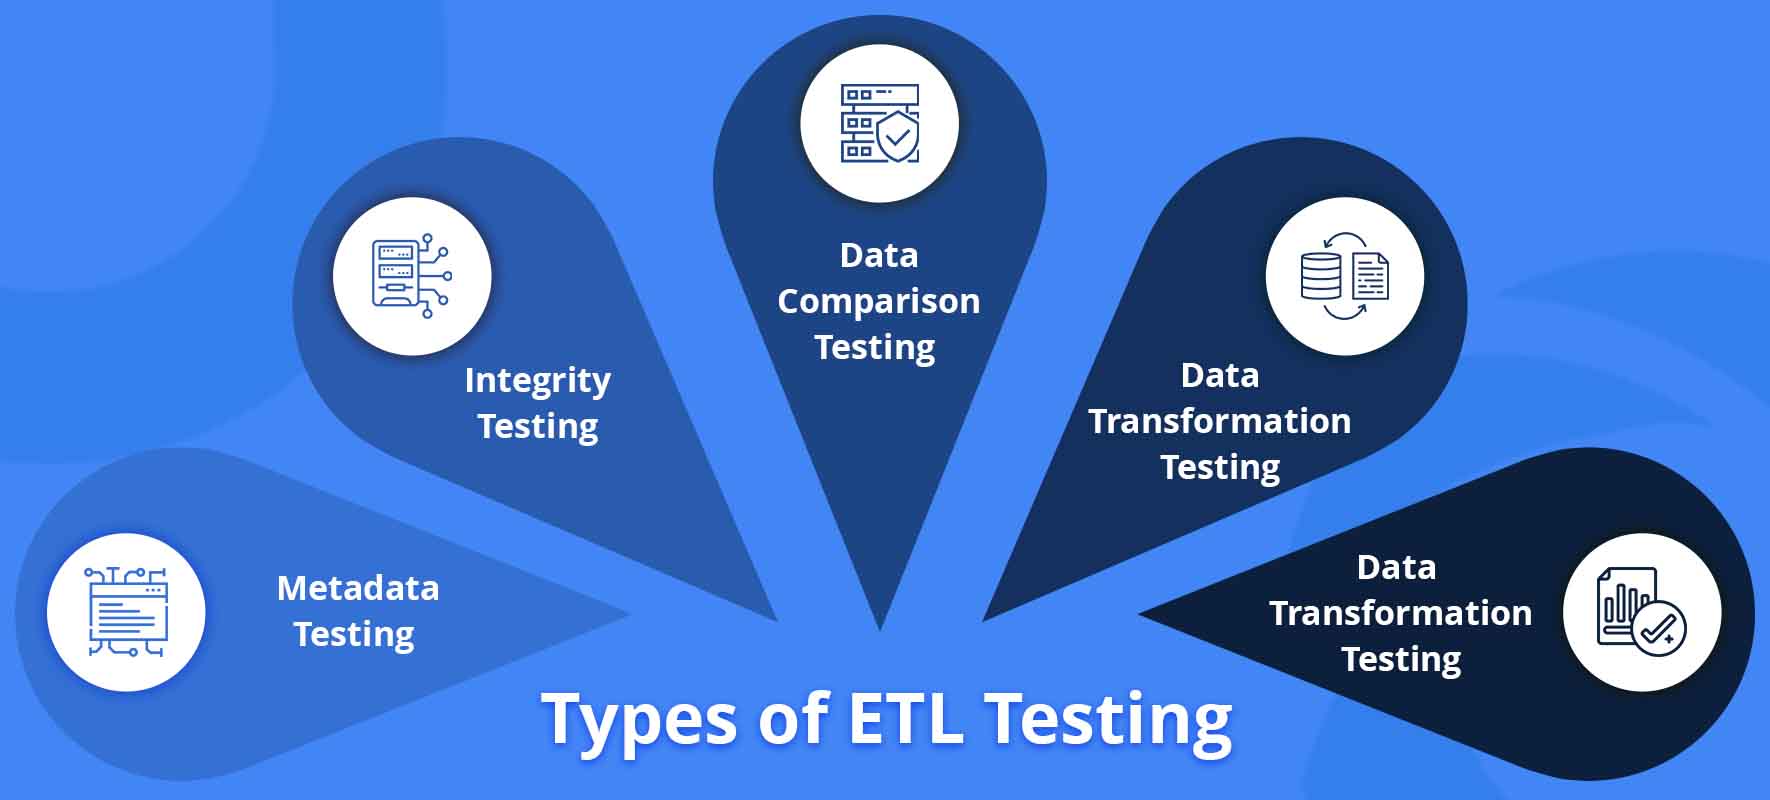 Types of ETL Testing Nitor Infotech